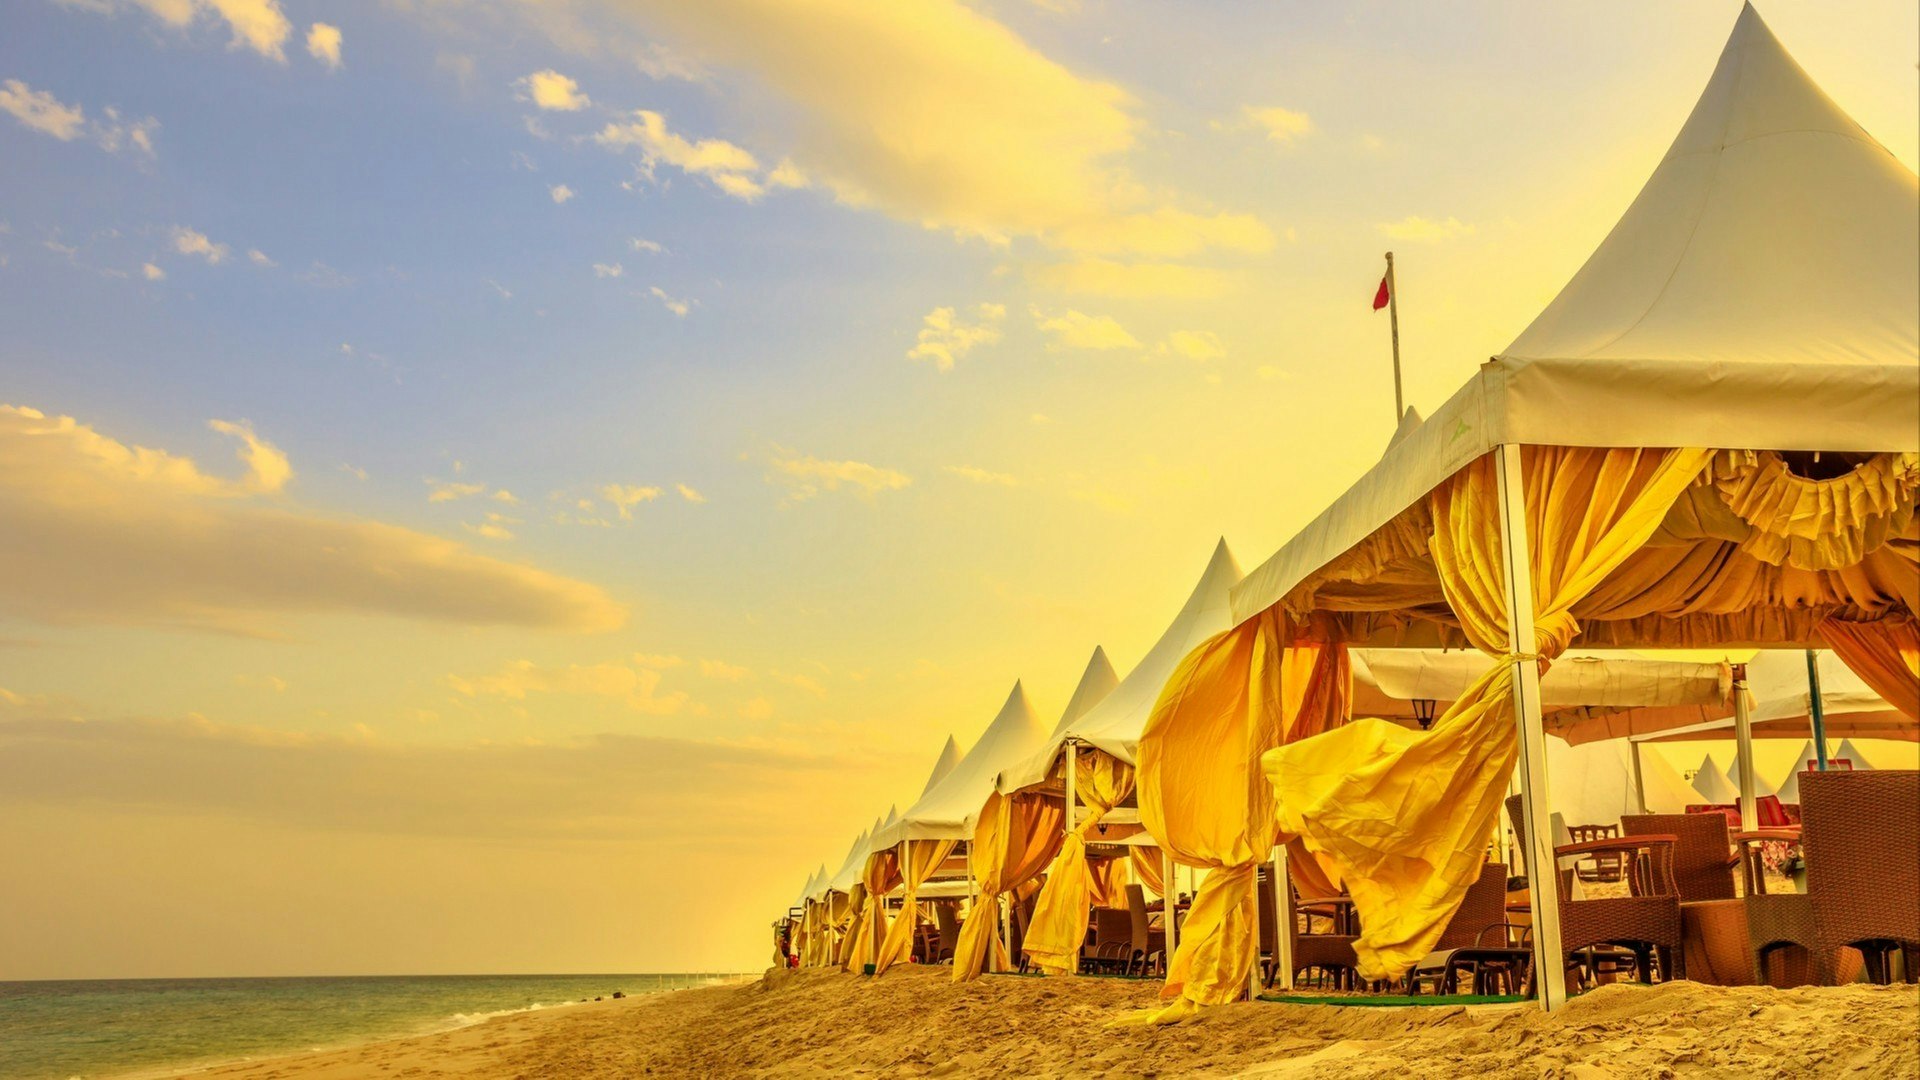 Luxurious tents at desert beach camp